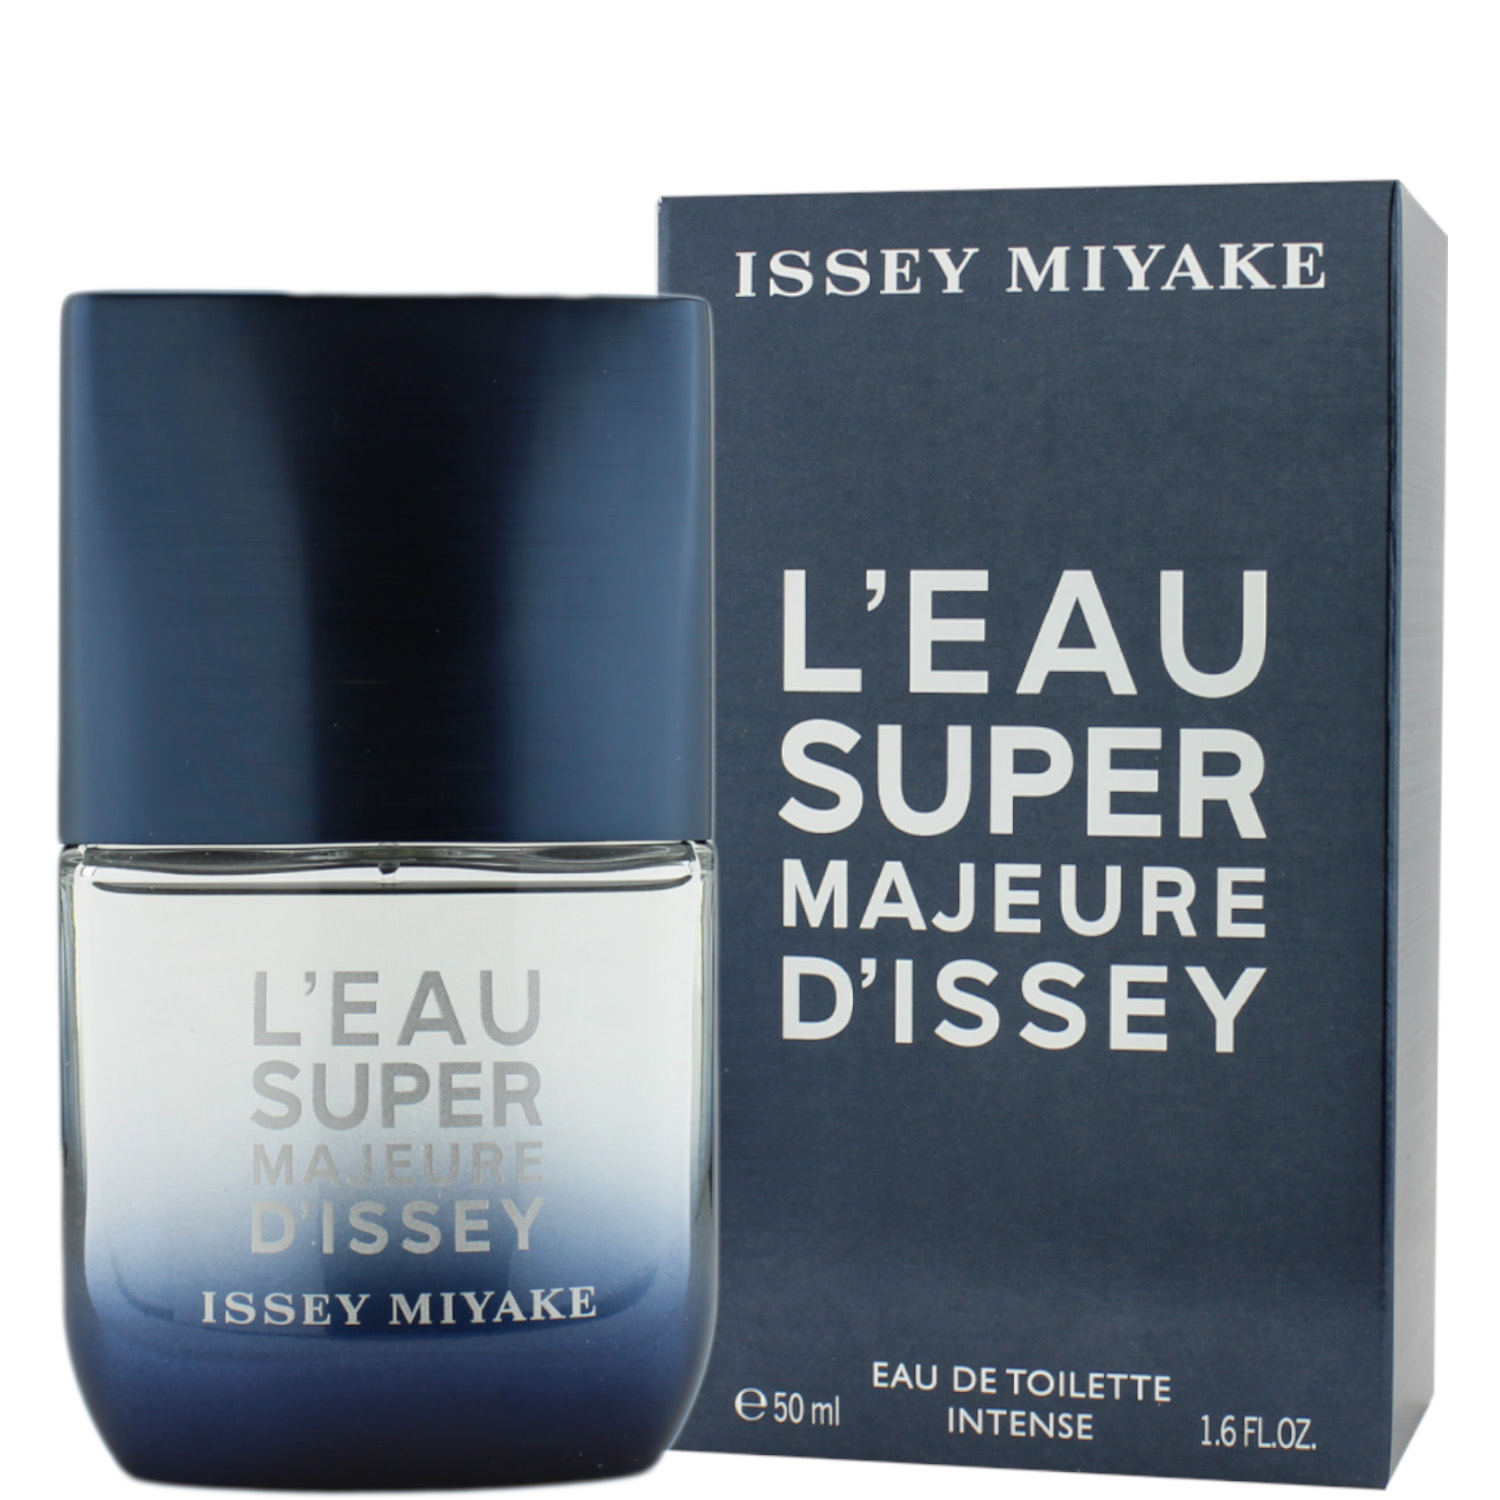 Issey Miyake L'Eau Super Majeure d'Issey Intense Eau de Toilette 50ml 